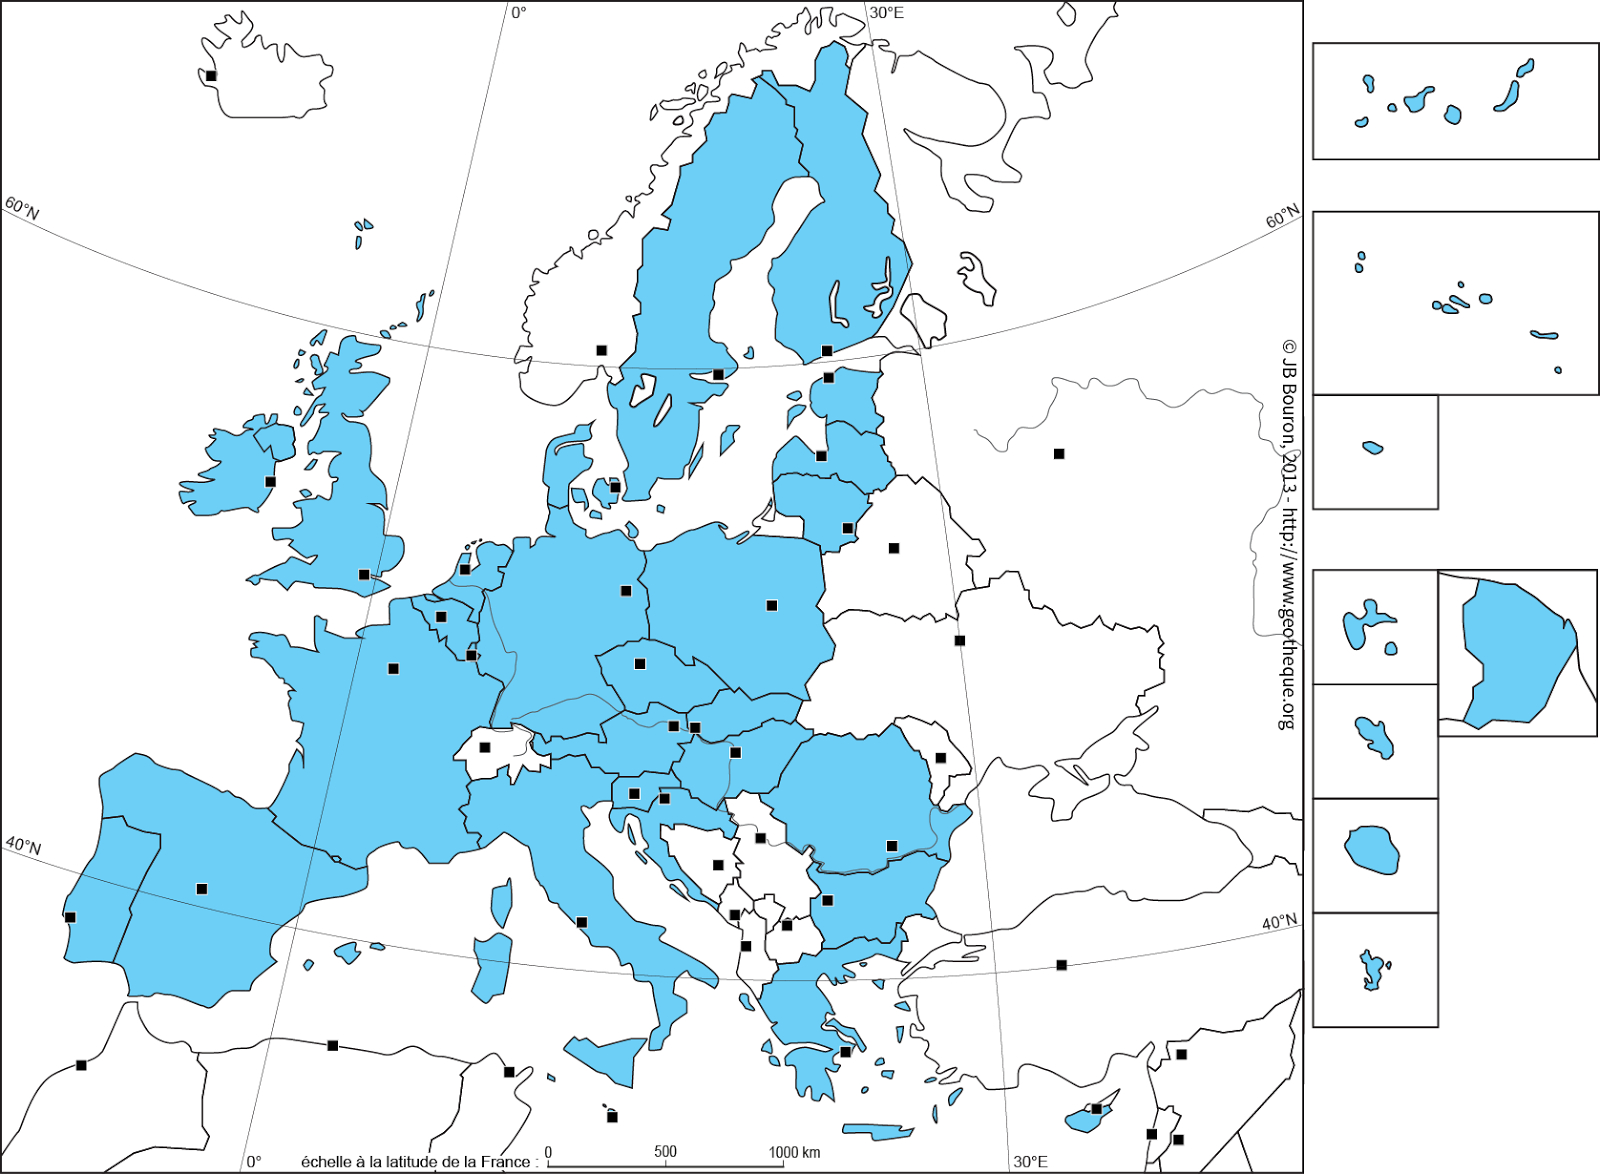 Epn Folelli: A La Conquête De L'Europe dedans Les 28 Pays De L Union Européenne Et Leur Capitale